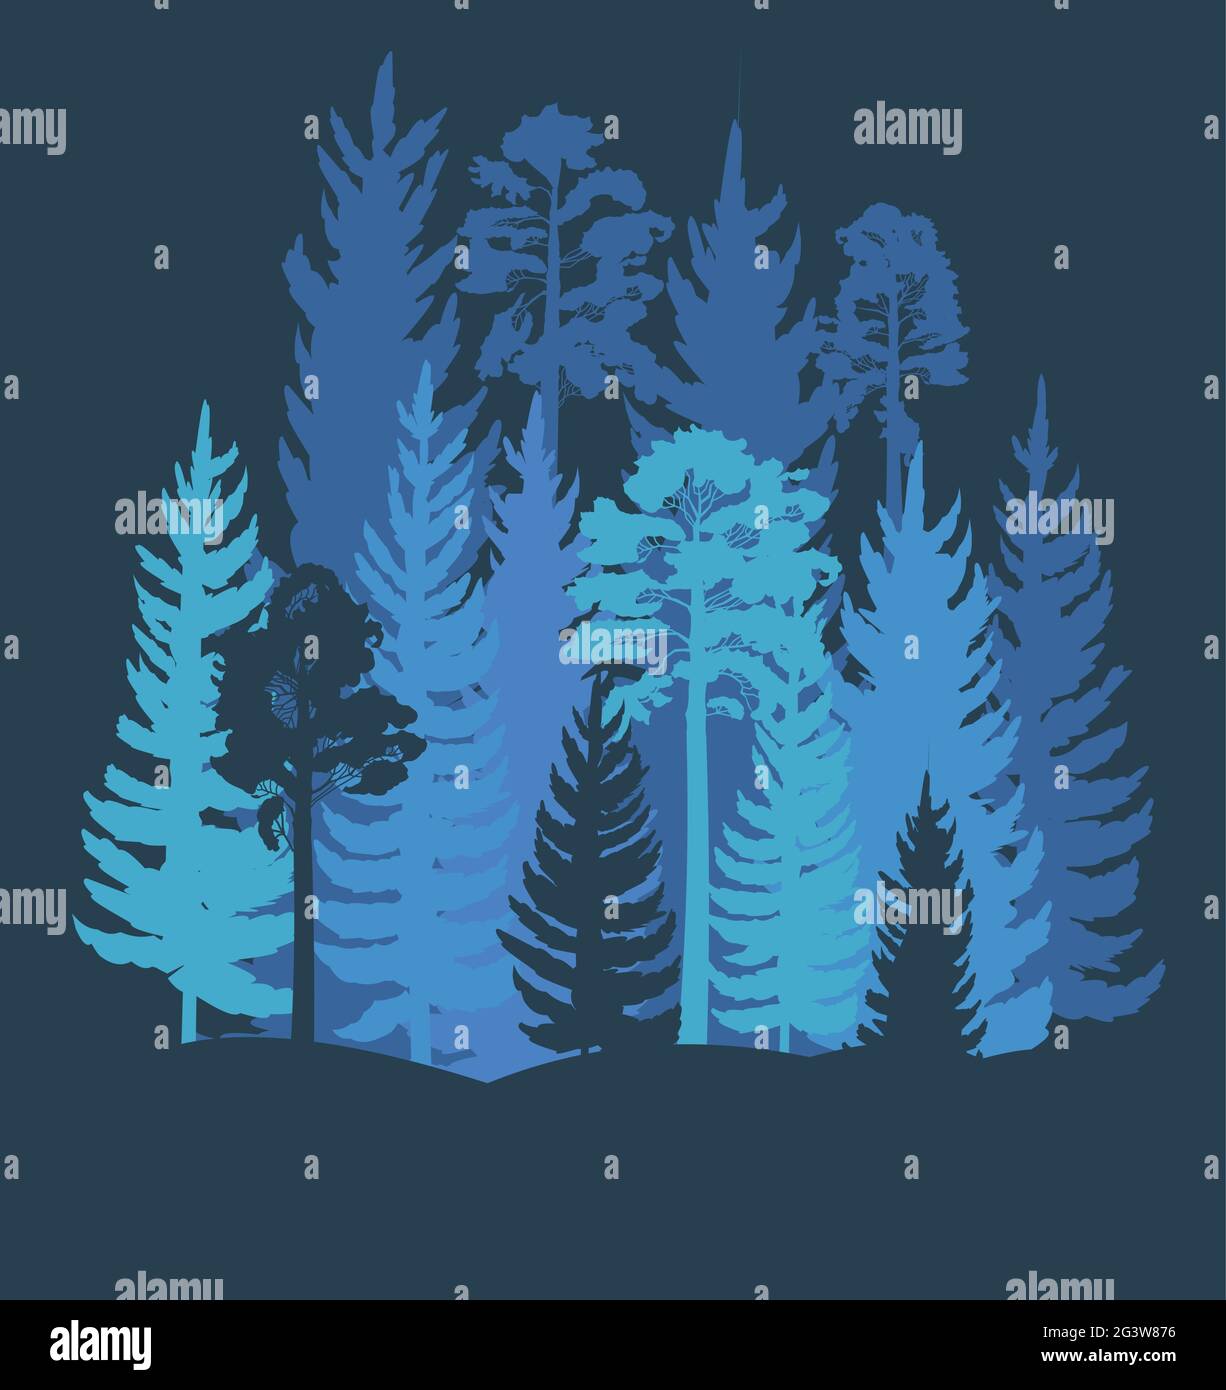 Forest Silhouette. Landschaft mit Nadelbäumen. Wunderschöne Aussicht bei Nacht. Kiefern- und Fichtenbäume. Sommer Naturlandschaft. Illustration Vektorgrafiken Stock Vektor